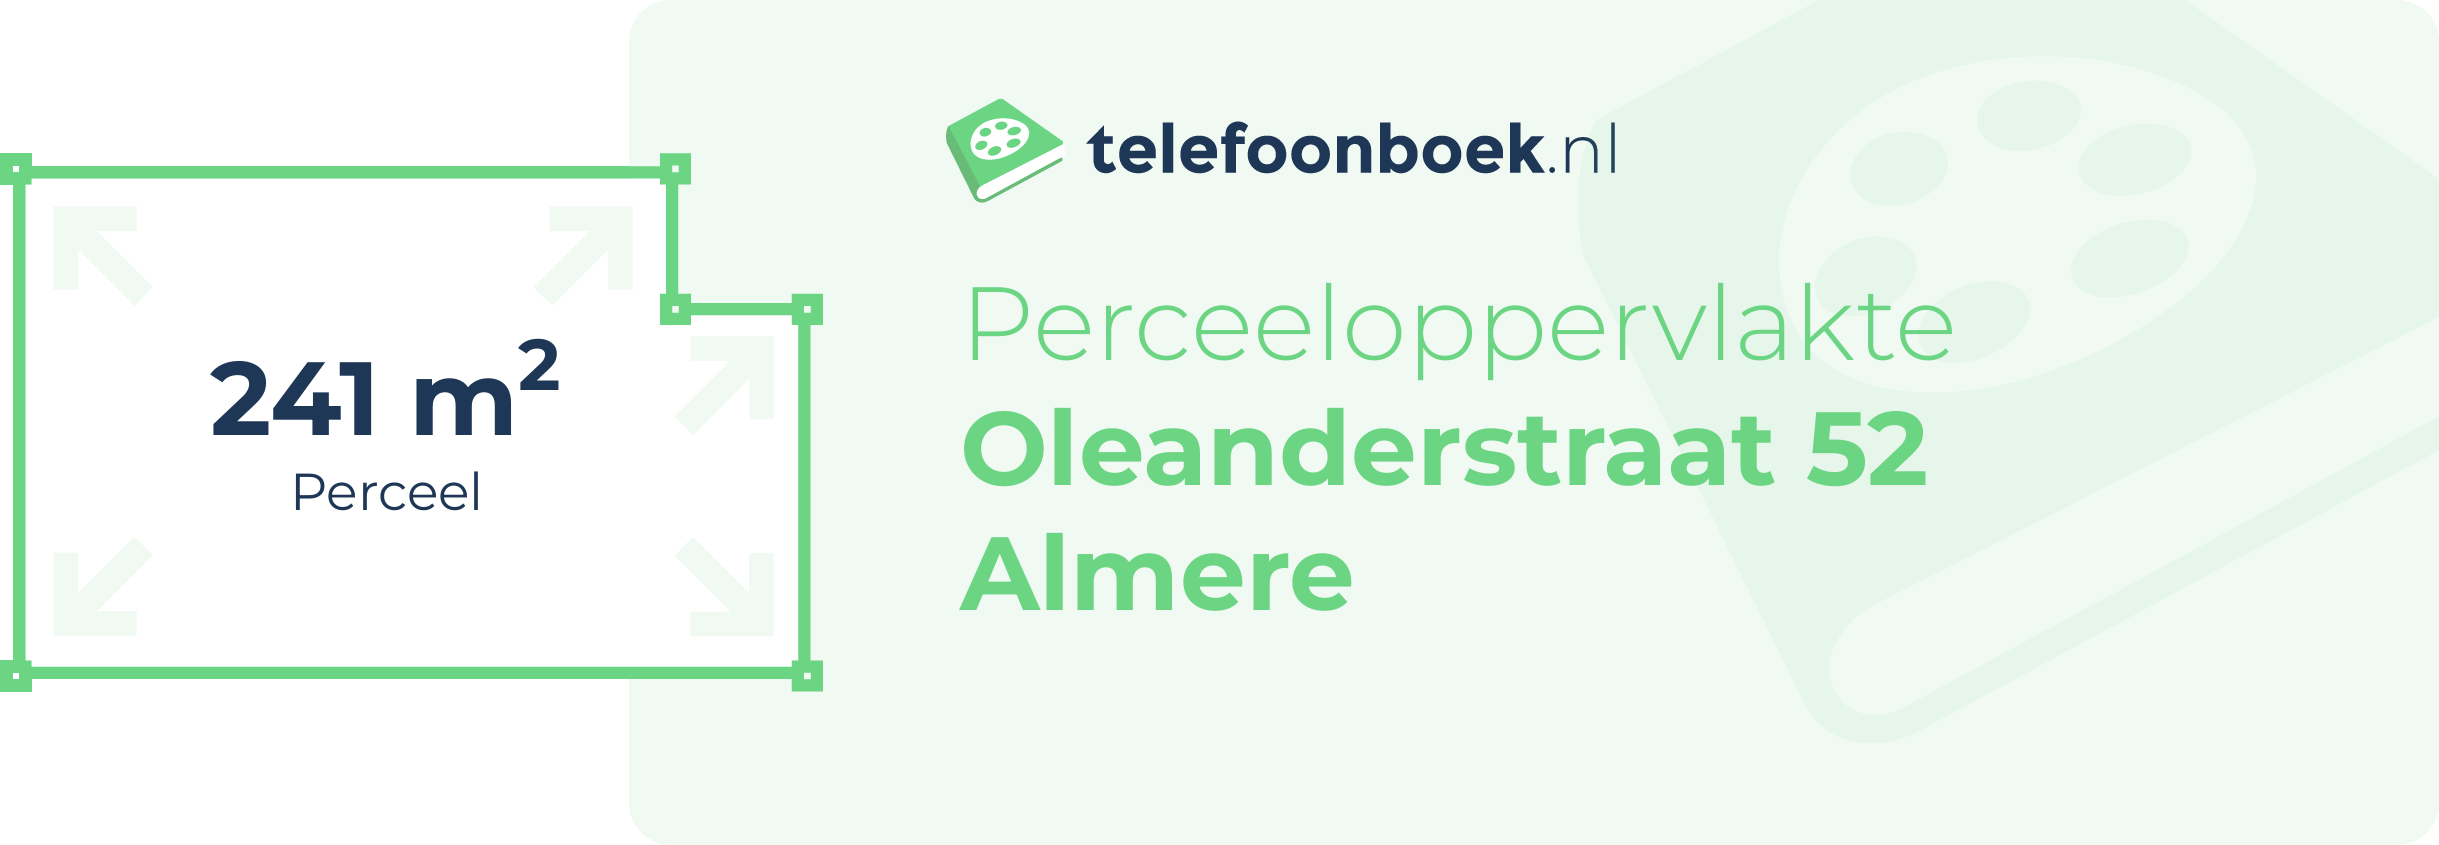 Perceeloppervlakte Oleanderstraat 52 Almere